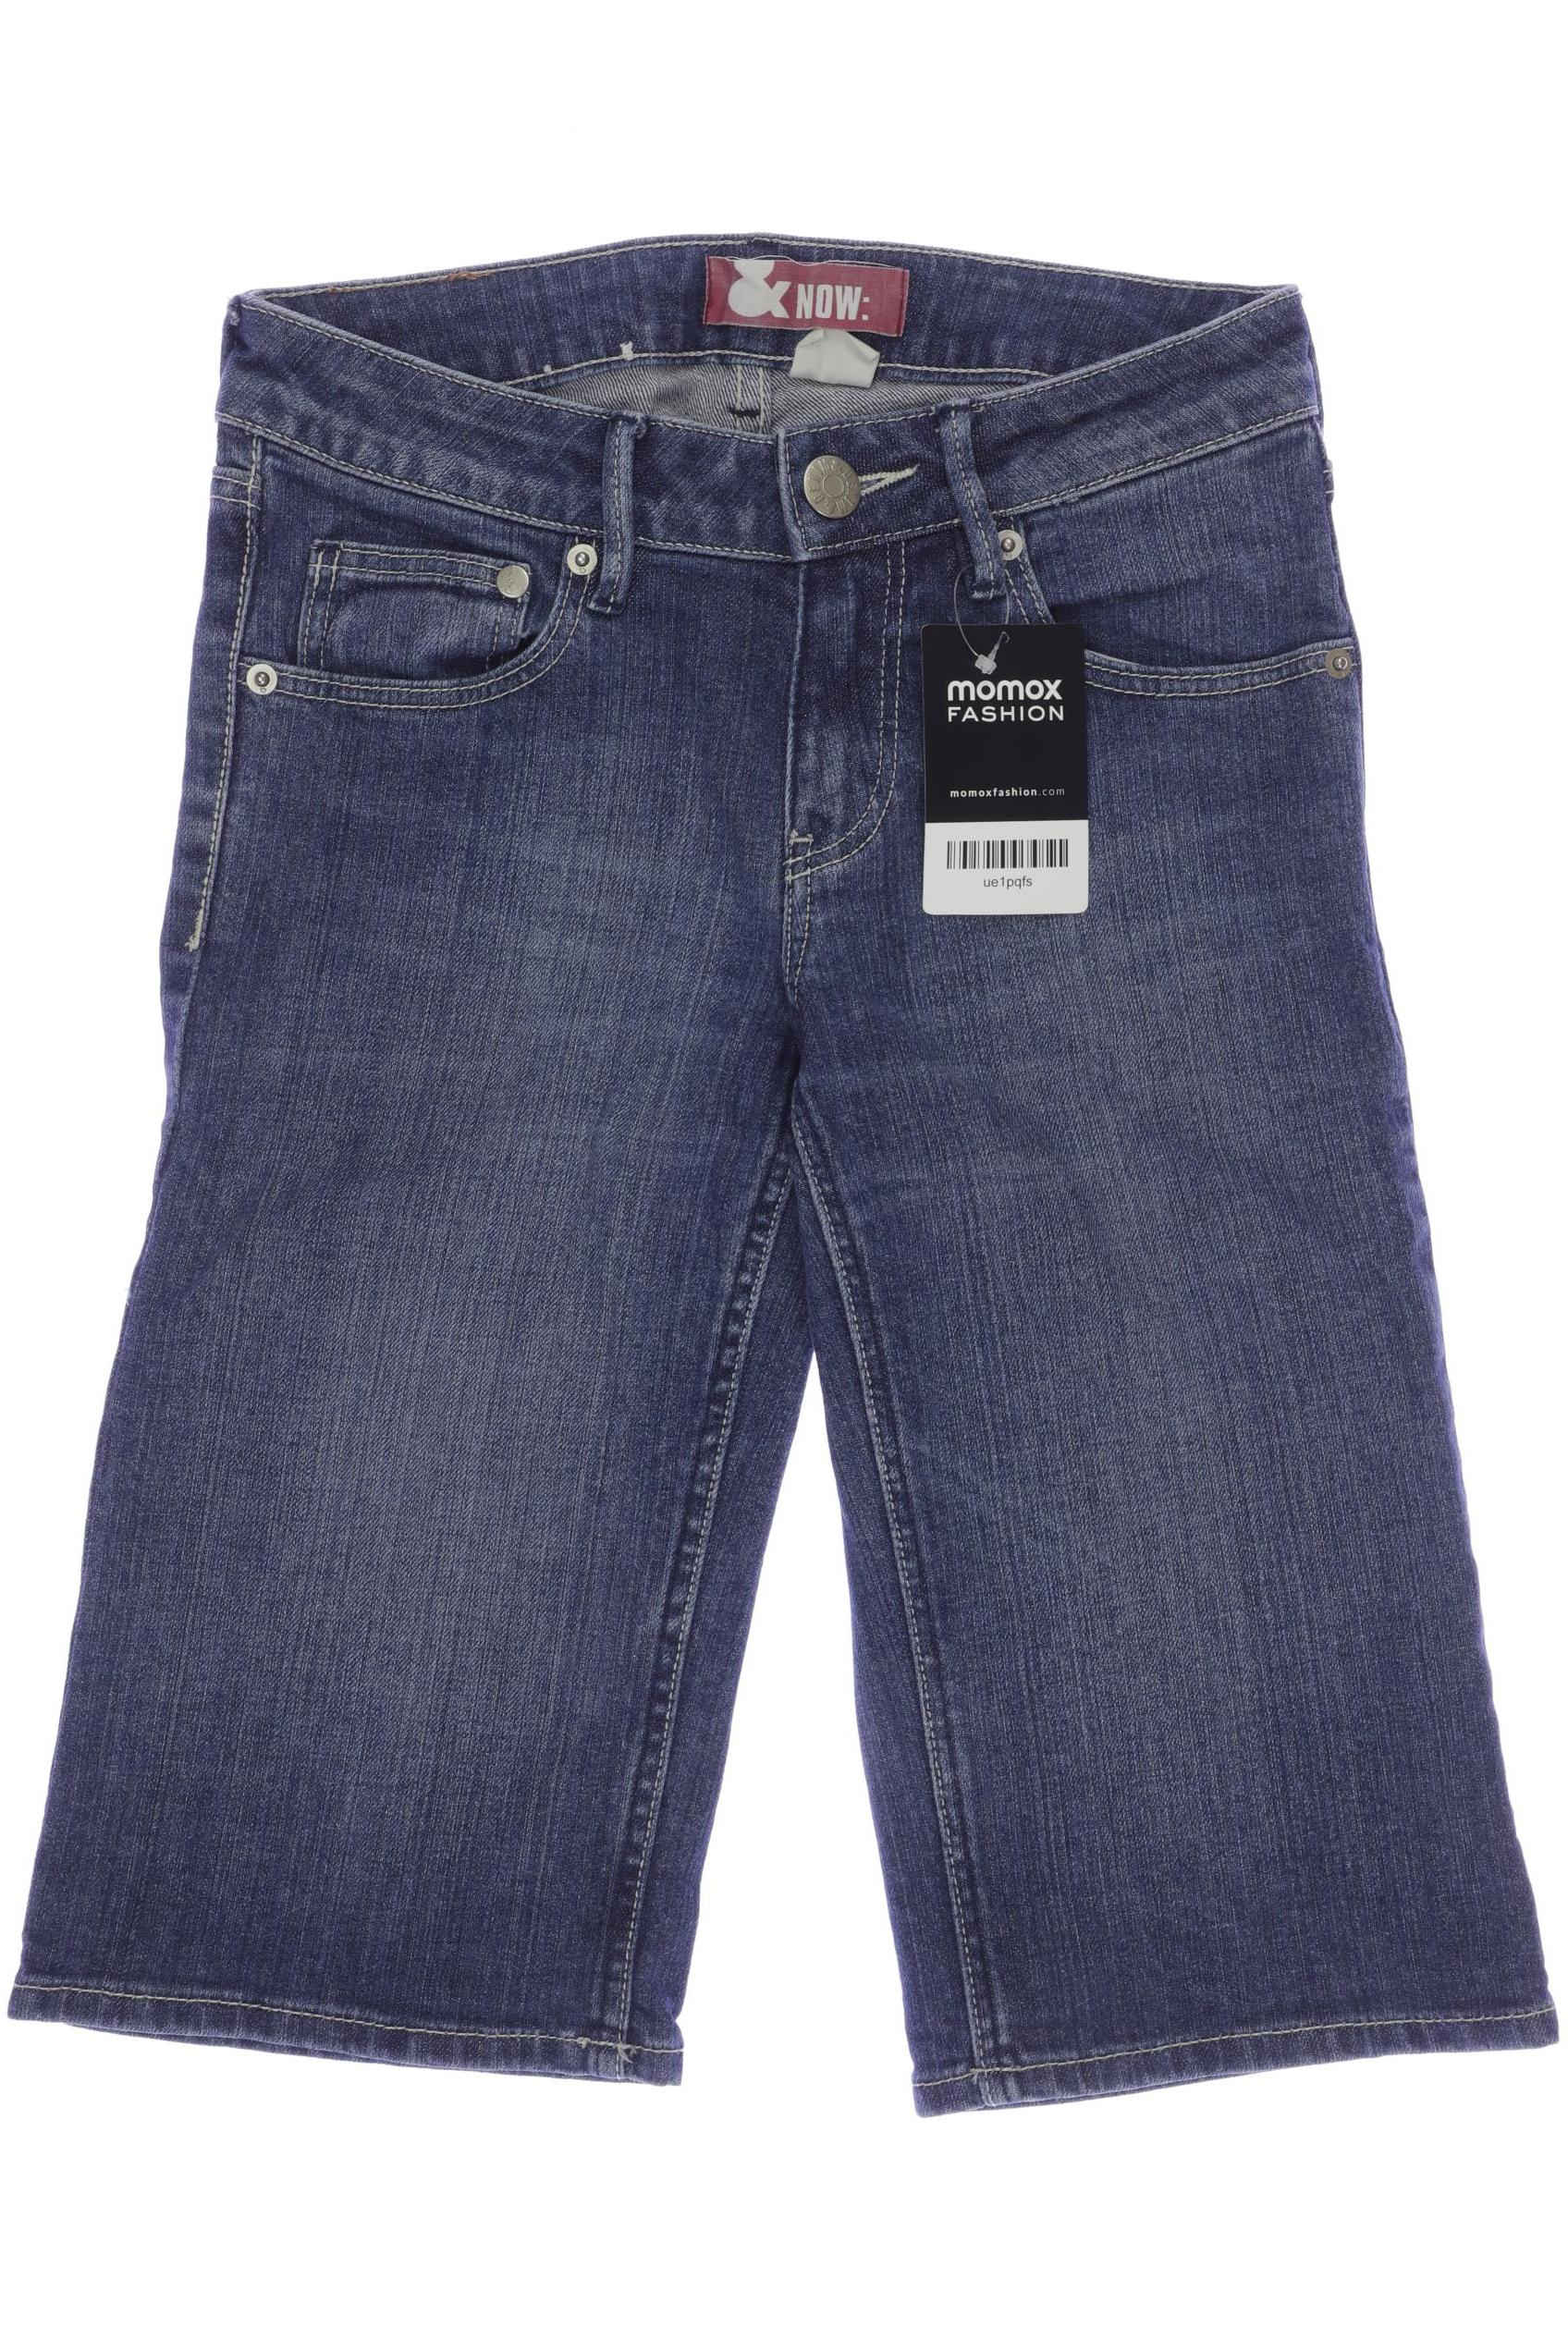 H&M Damen Shorts, blau, Gr. 152 von H&M